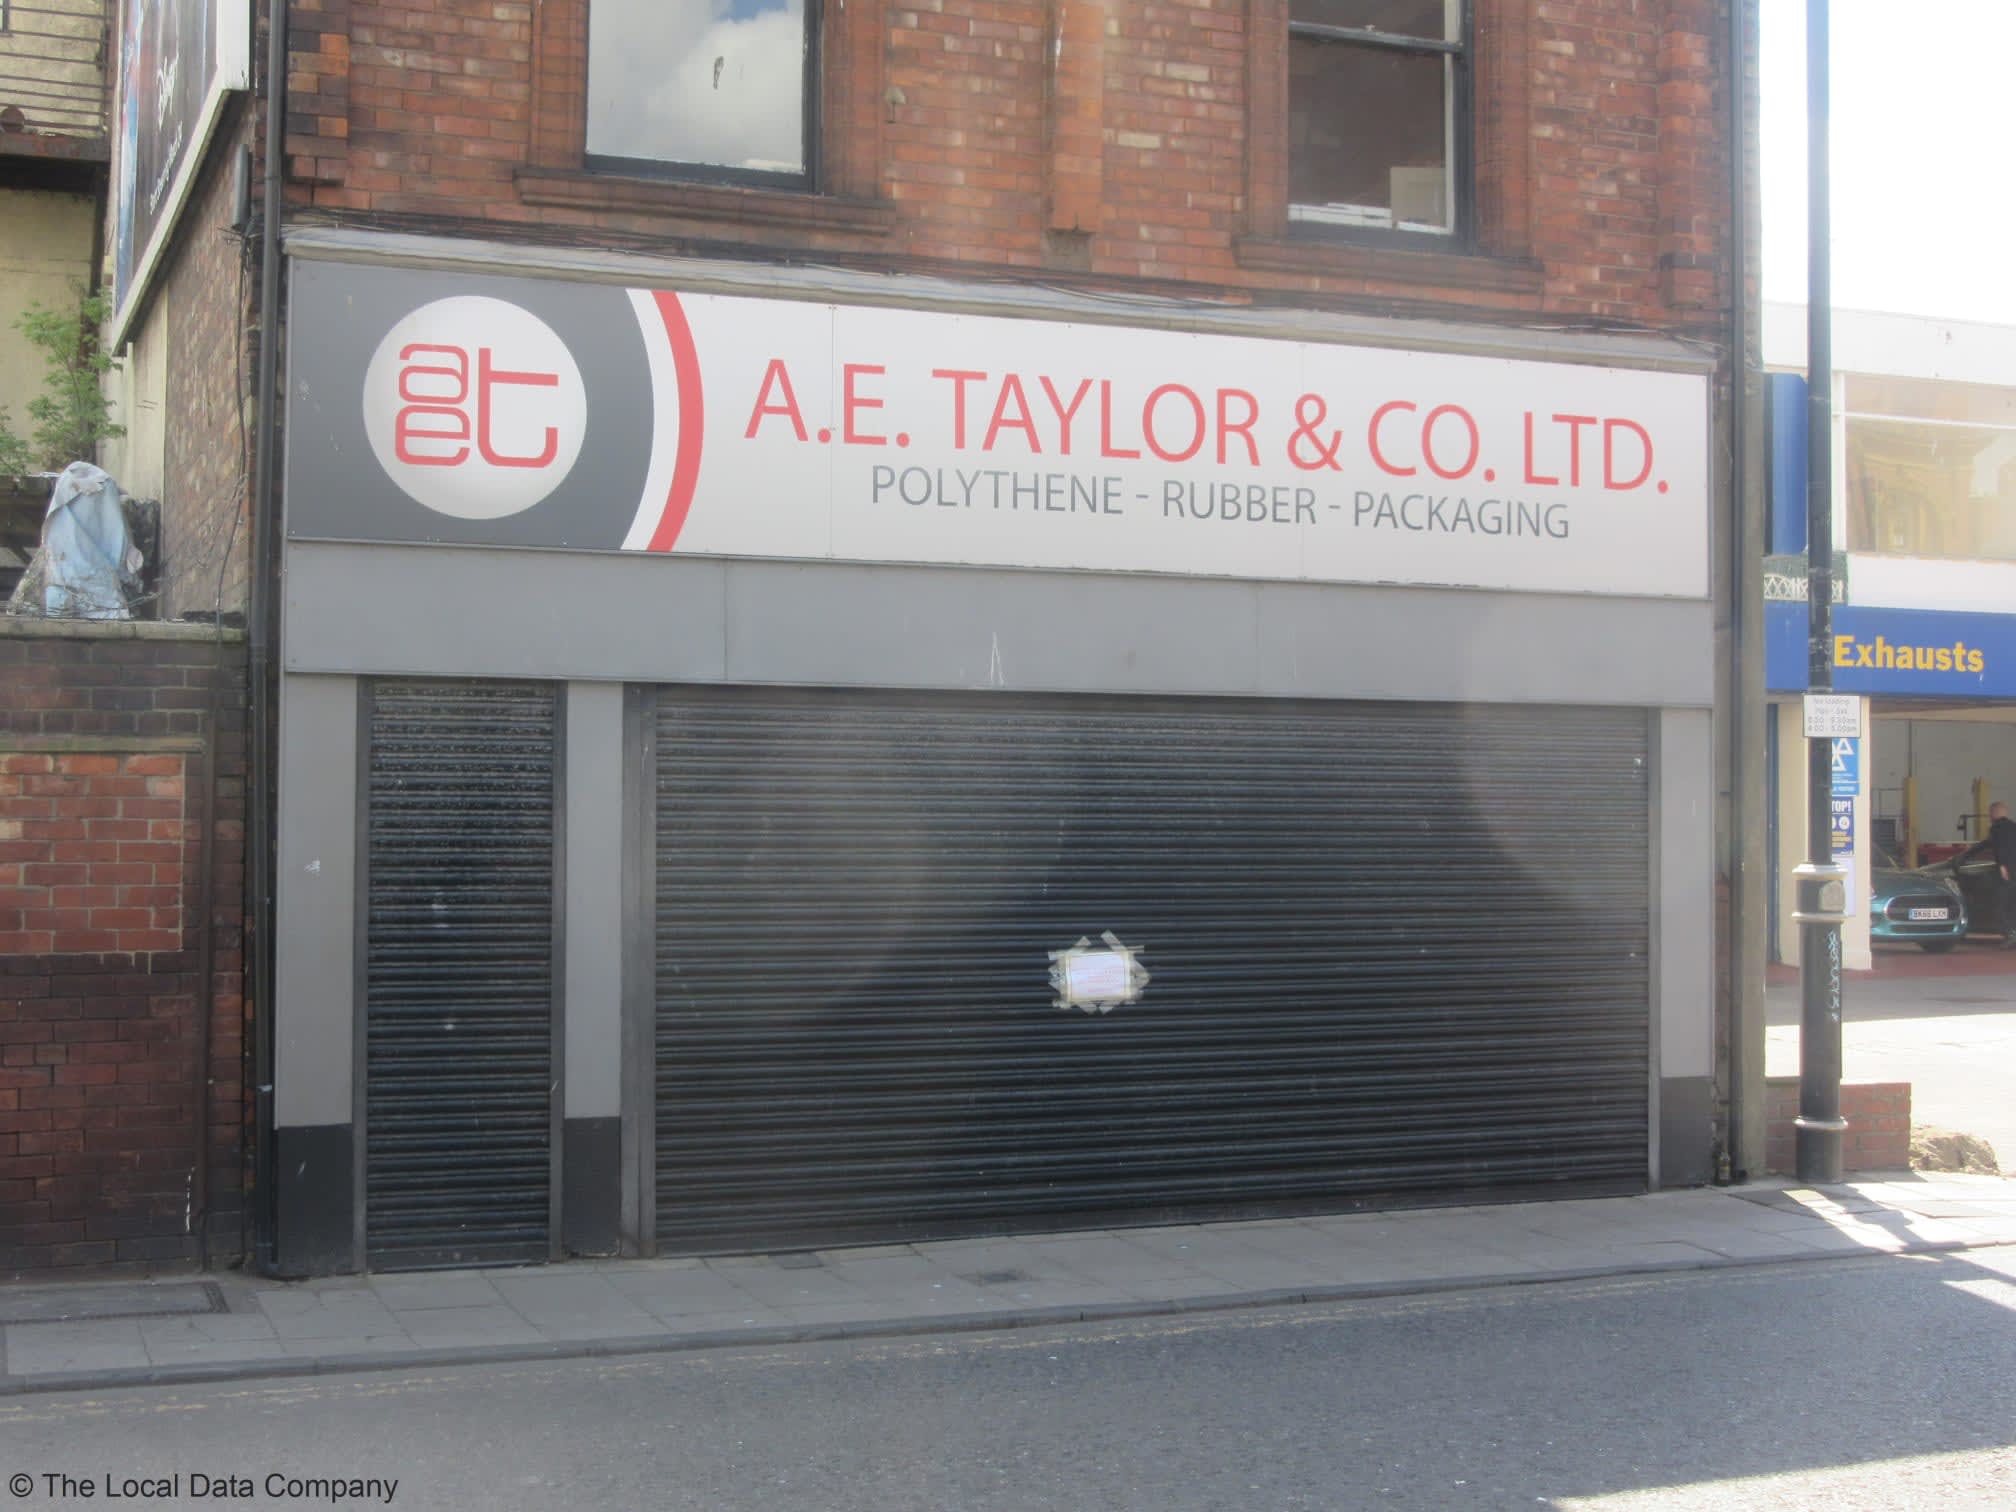 Images A E Taylor & Co Ltd